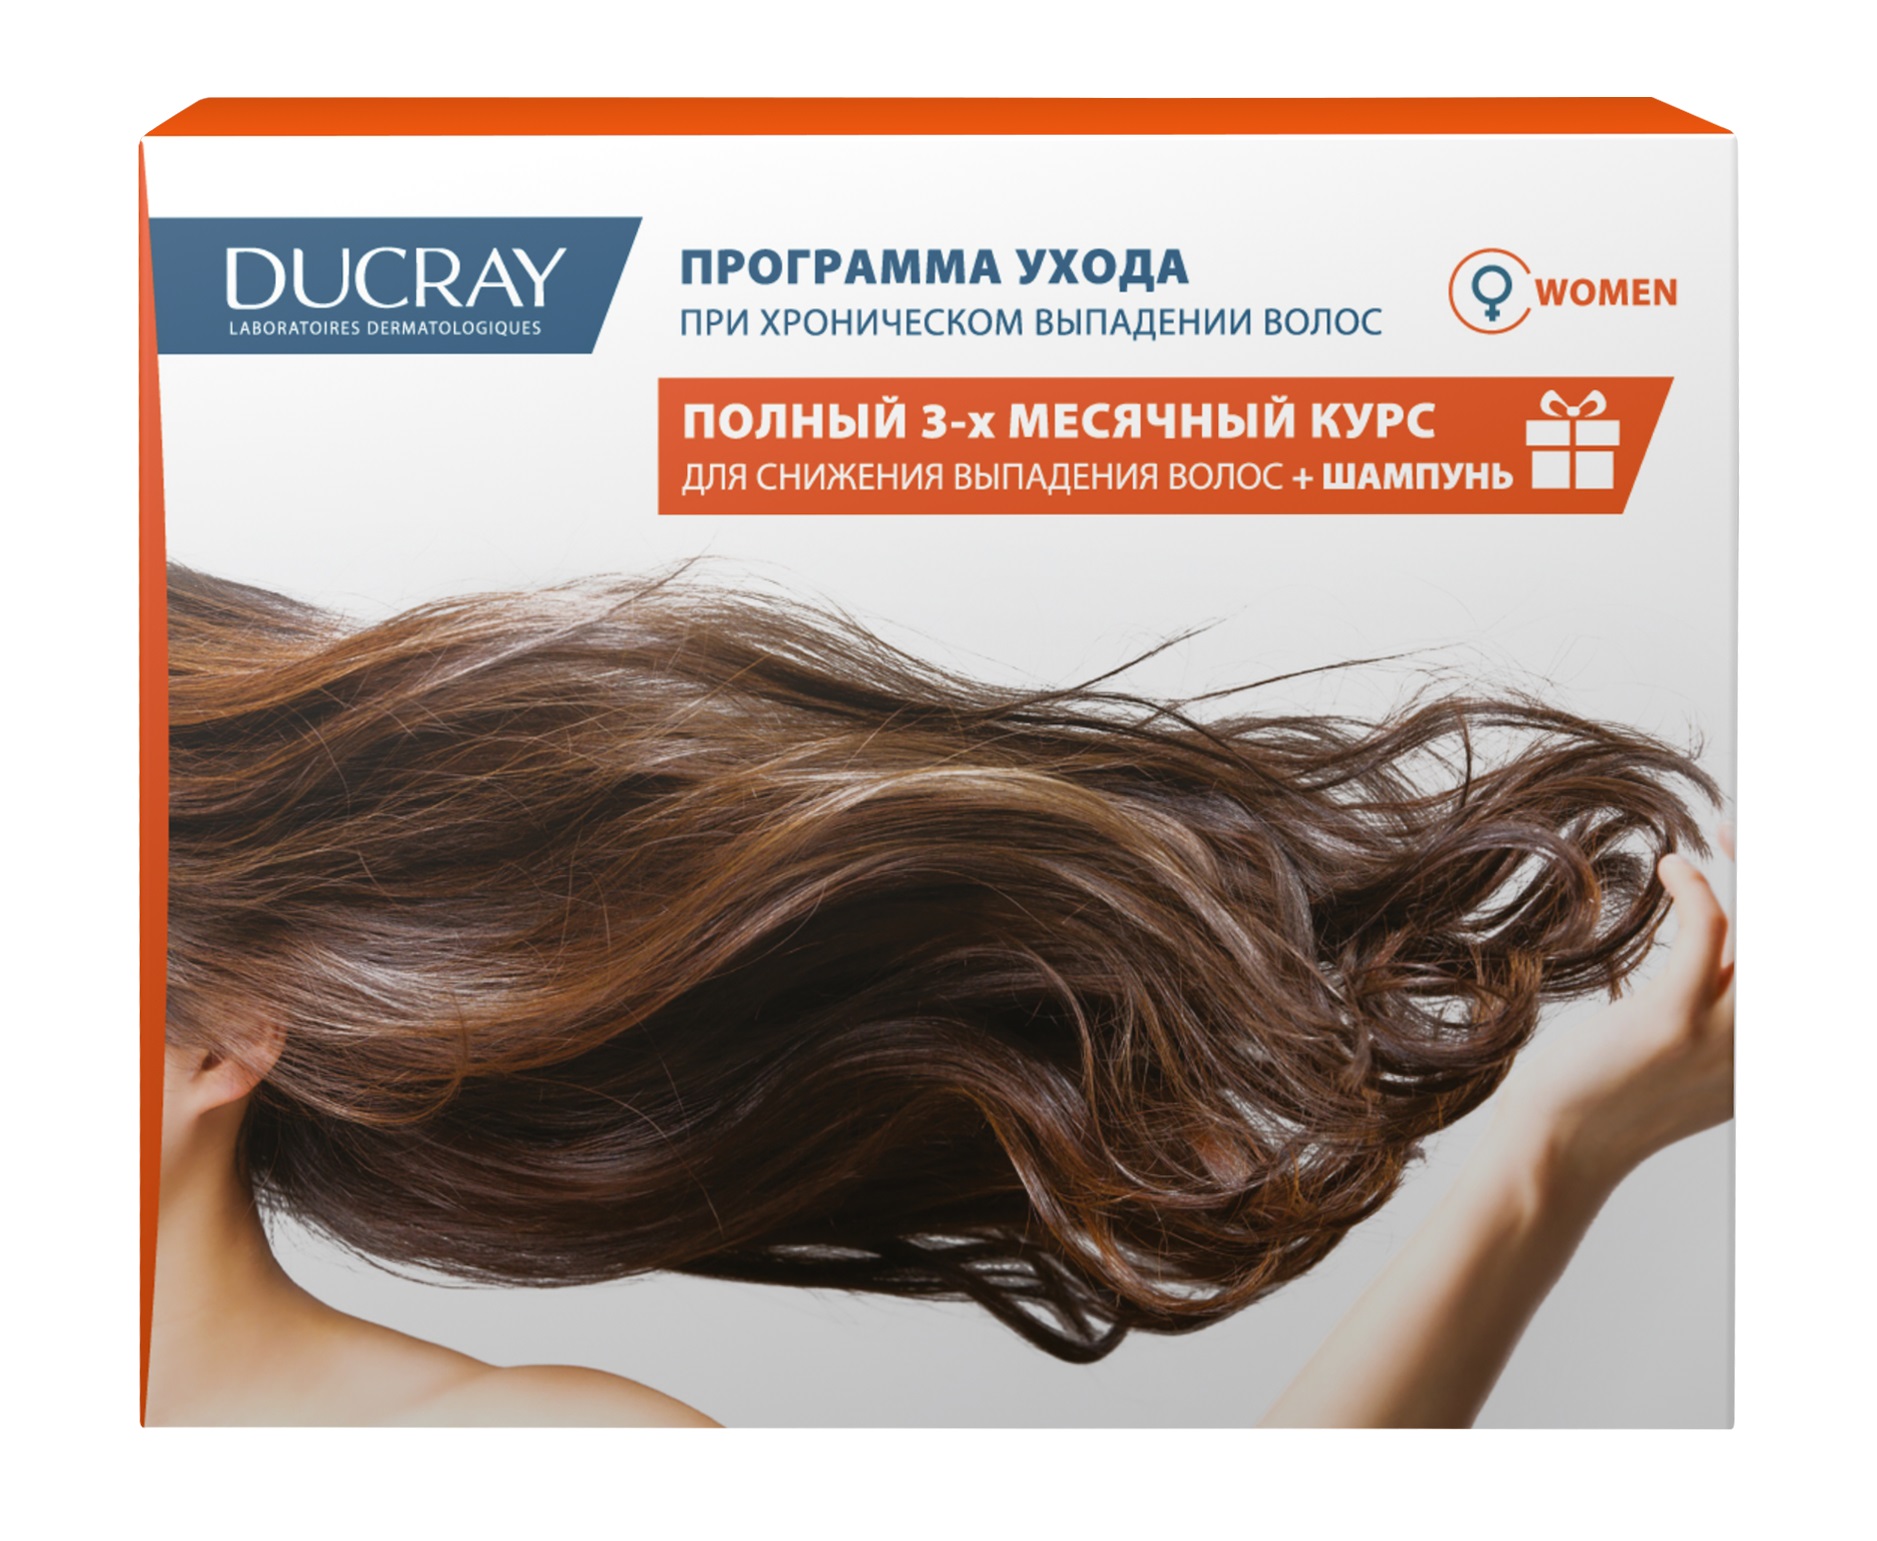 Дюкрэ Неоптид набор лосьон для снижения выпадения волос у женщин 3x30мл+Анафаз+ шампунь для ухода за ослабл. выпад. волосами 100мл